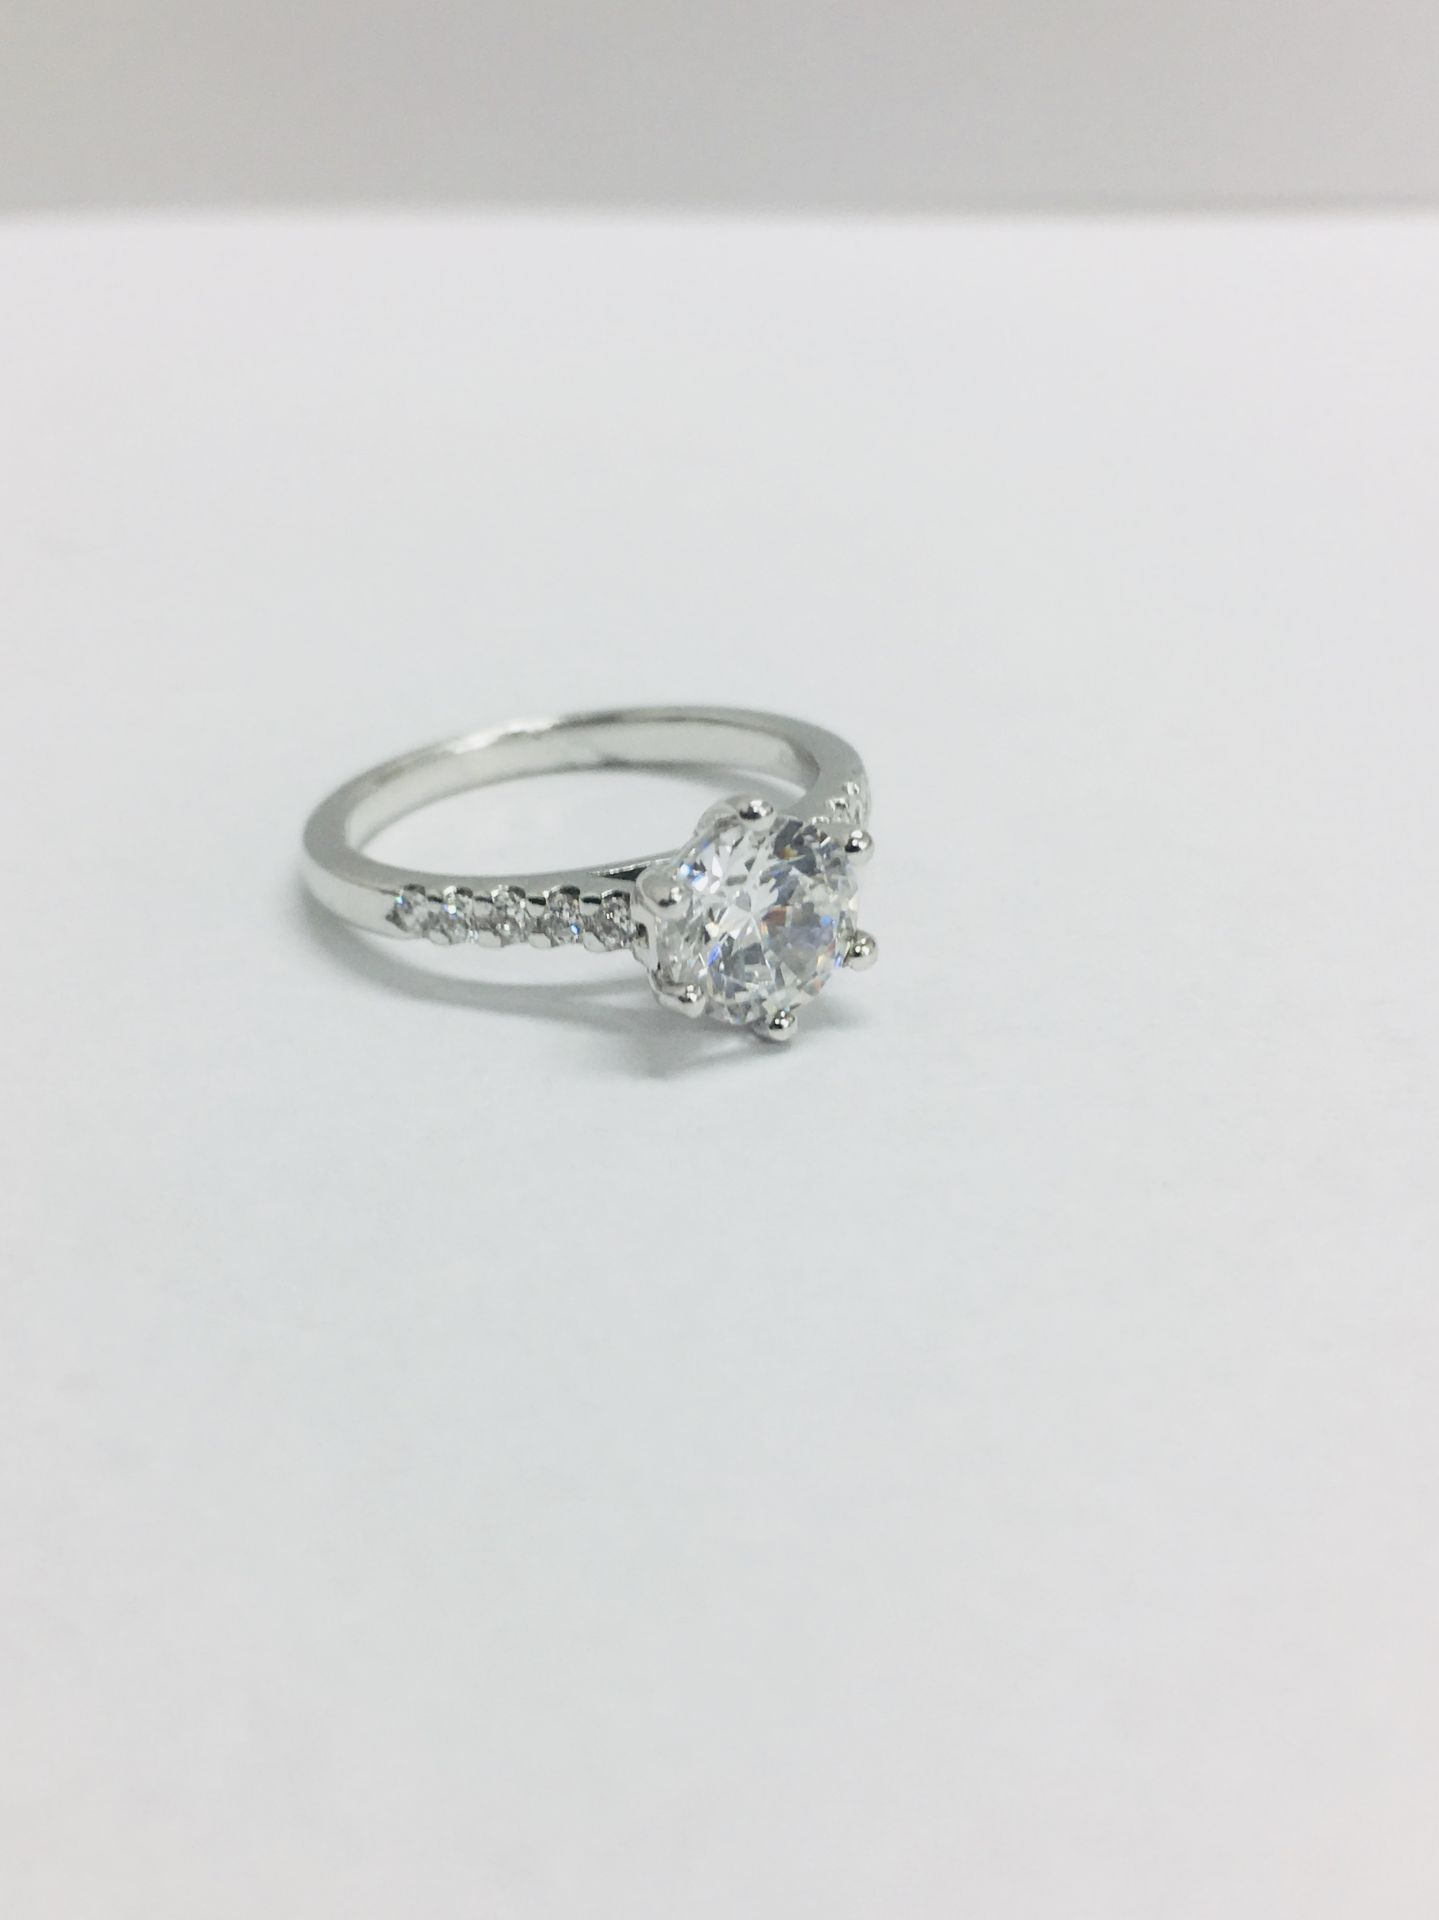 Platinum diamond solitaire ring,0.50ct brilliant cut diamond vs clarity h colour (clarity - Image 3 of 5